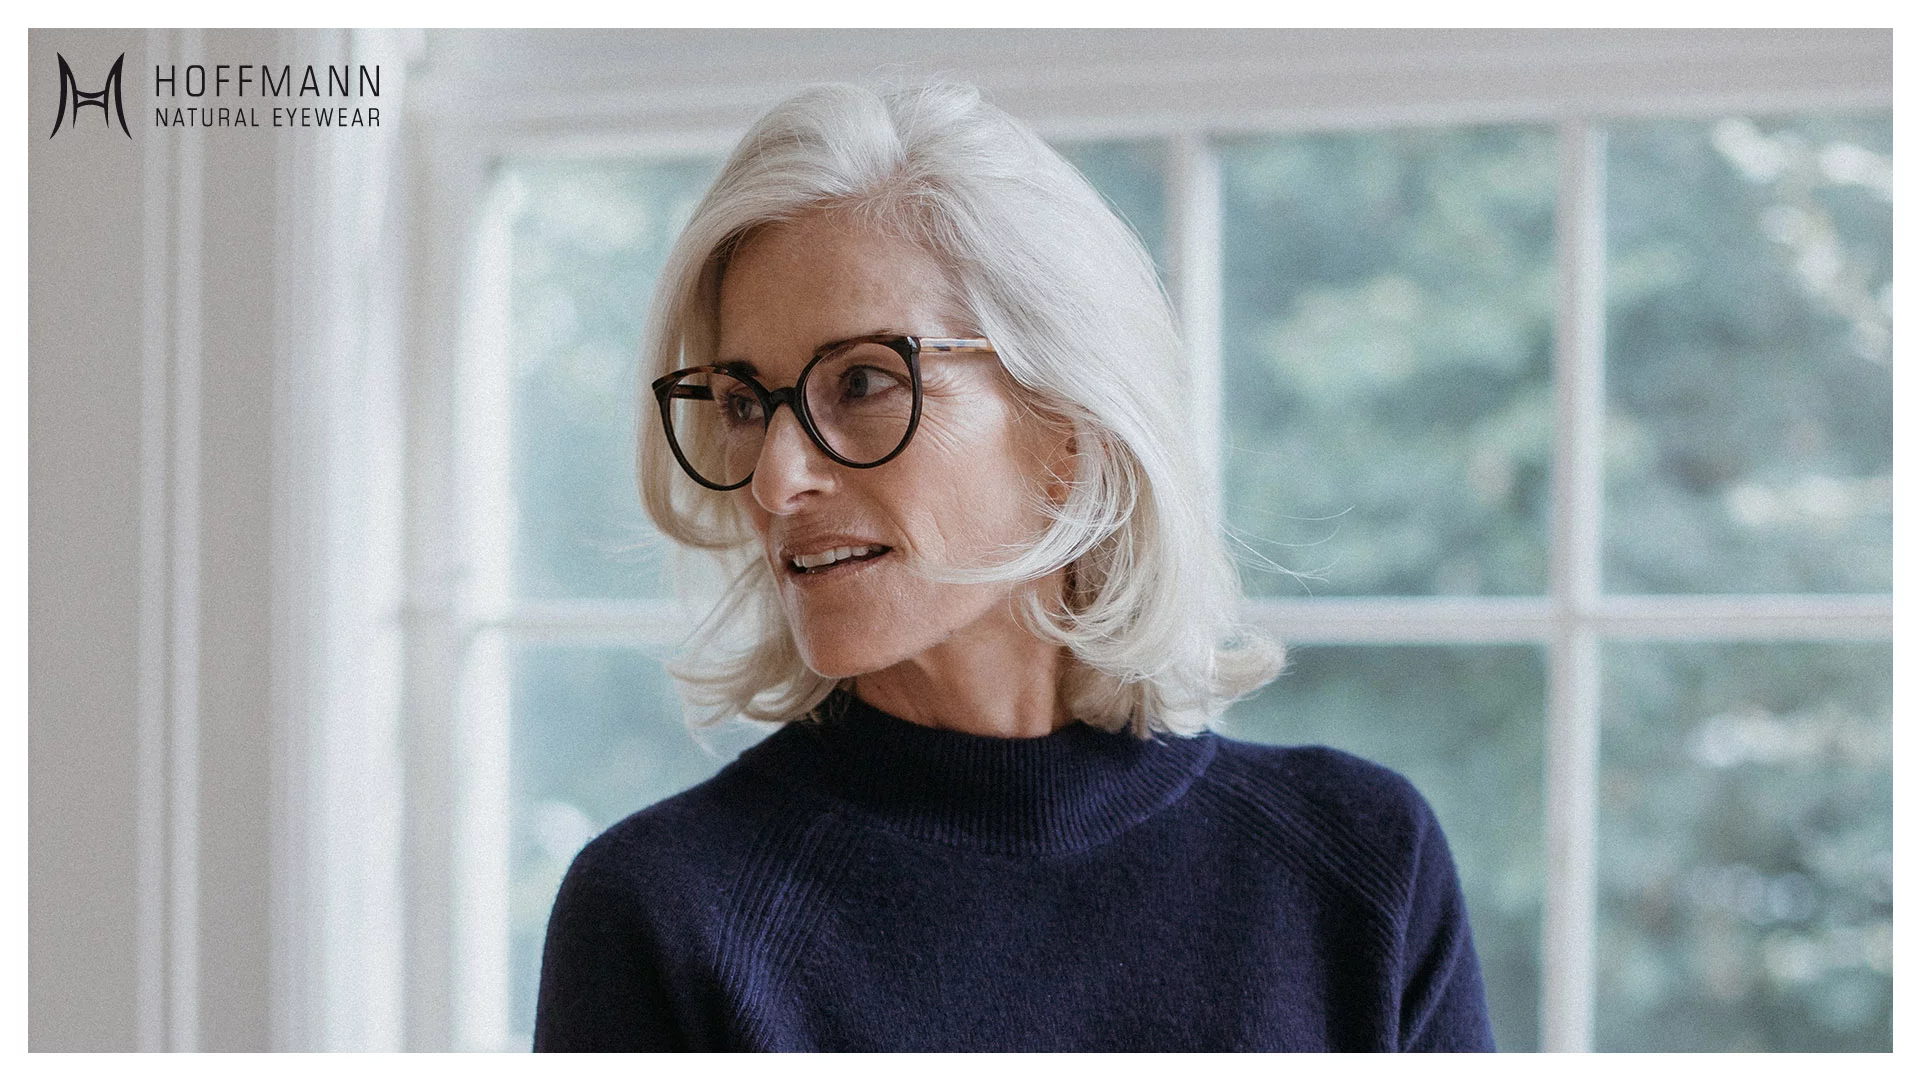 Nahaufnahme von einem älteren Female Model mit schulterlangen, weißen Haaren vor einem Fenster stehend, das eine braune Hoffmann Natural Eyewear Brille trägt.